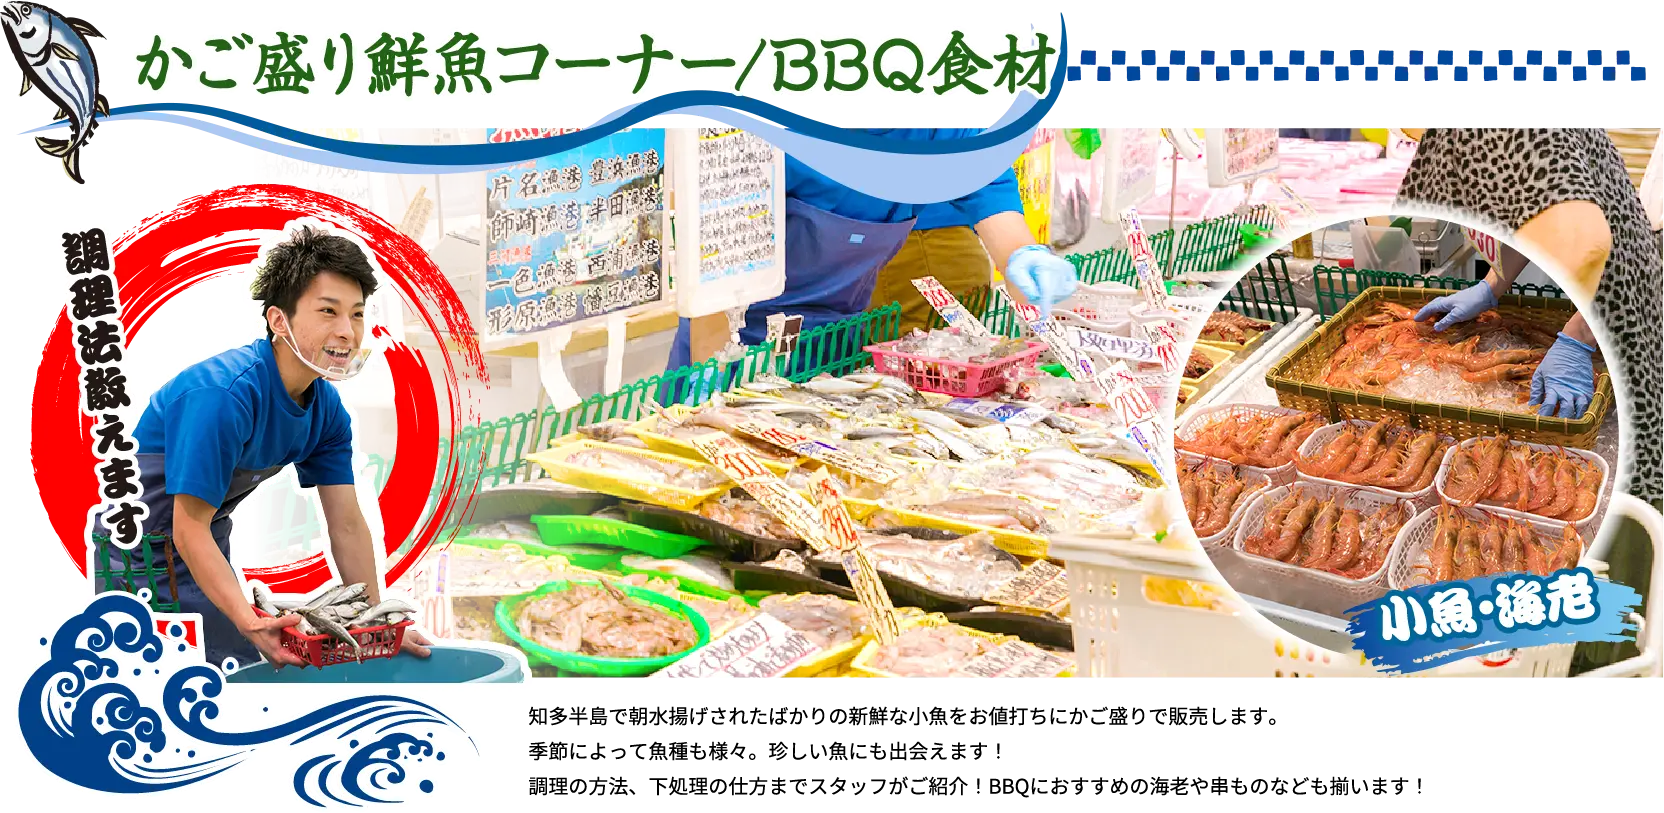 かご盛り鮮魚コーナー/BBQ食材 調理法教えます 知多半島で朝水揚げされたばかりの新鮮な小魚をお値打ちにかご盛りで販売します。季節によって魚種も様々。珍しい魚にも出会えます！調理の方法、下処理の仕方までスタッフがご紹介！BBQにおすすめの海老や串ものなども揃います！